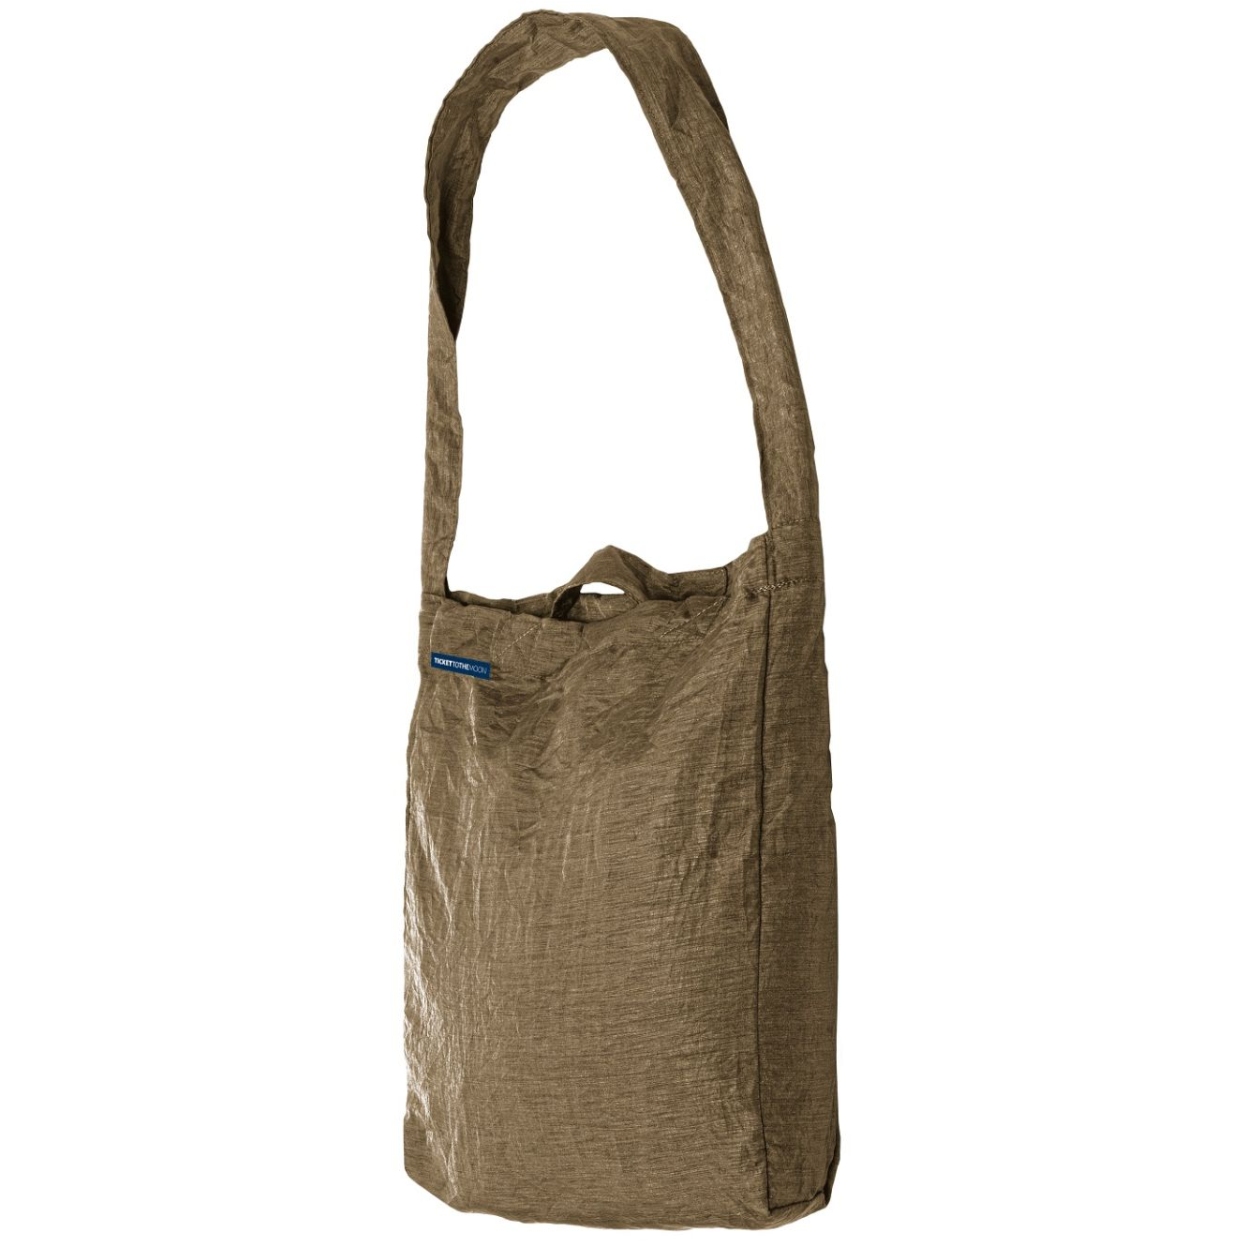 Produktbild von Ticket To The Moon Eco Bag Medium Premium Einkaufstasche 15L - Olive Brown